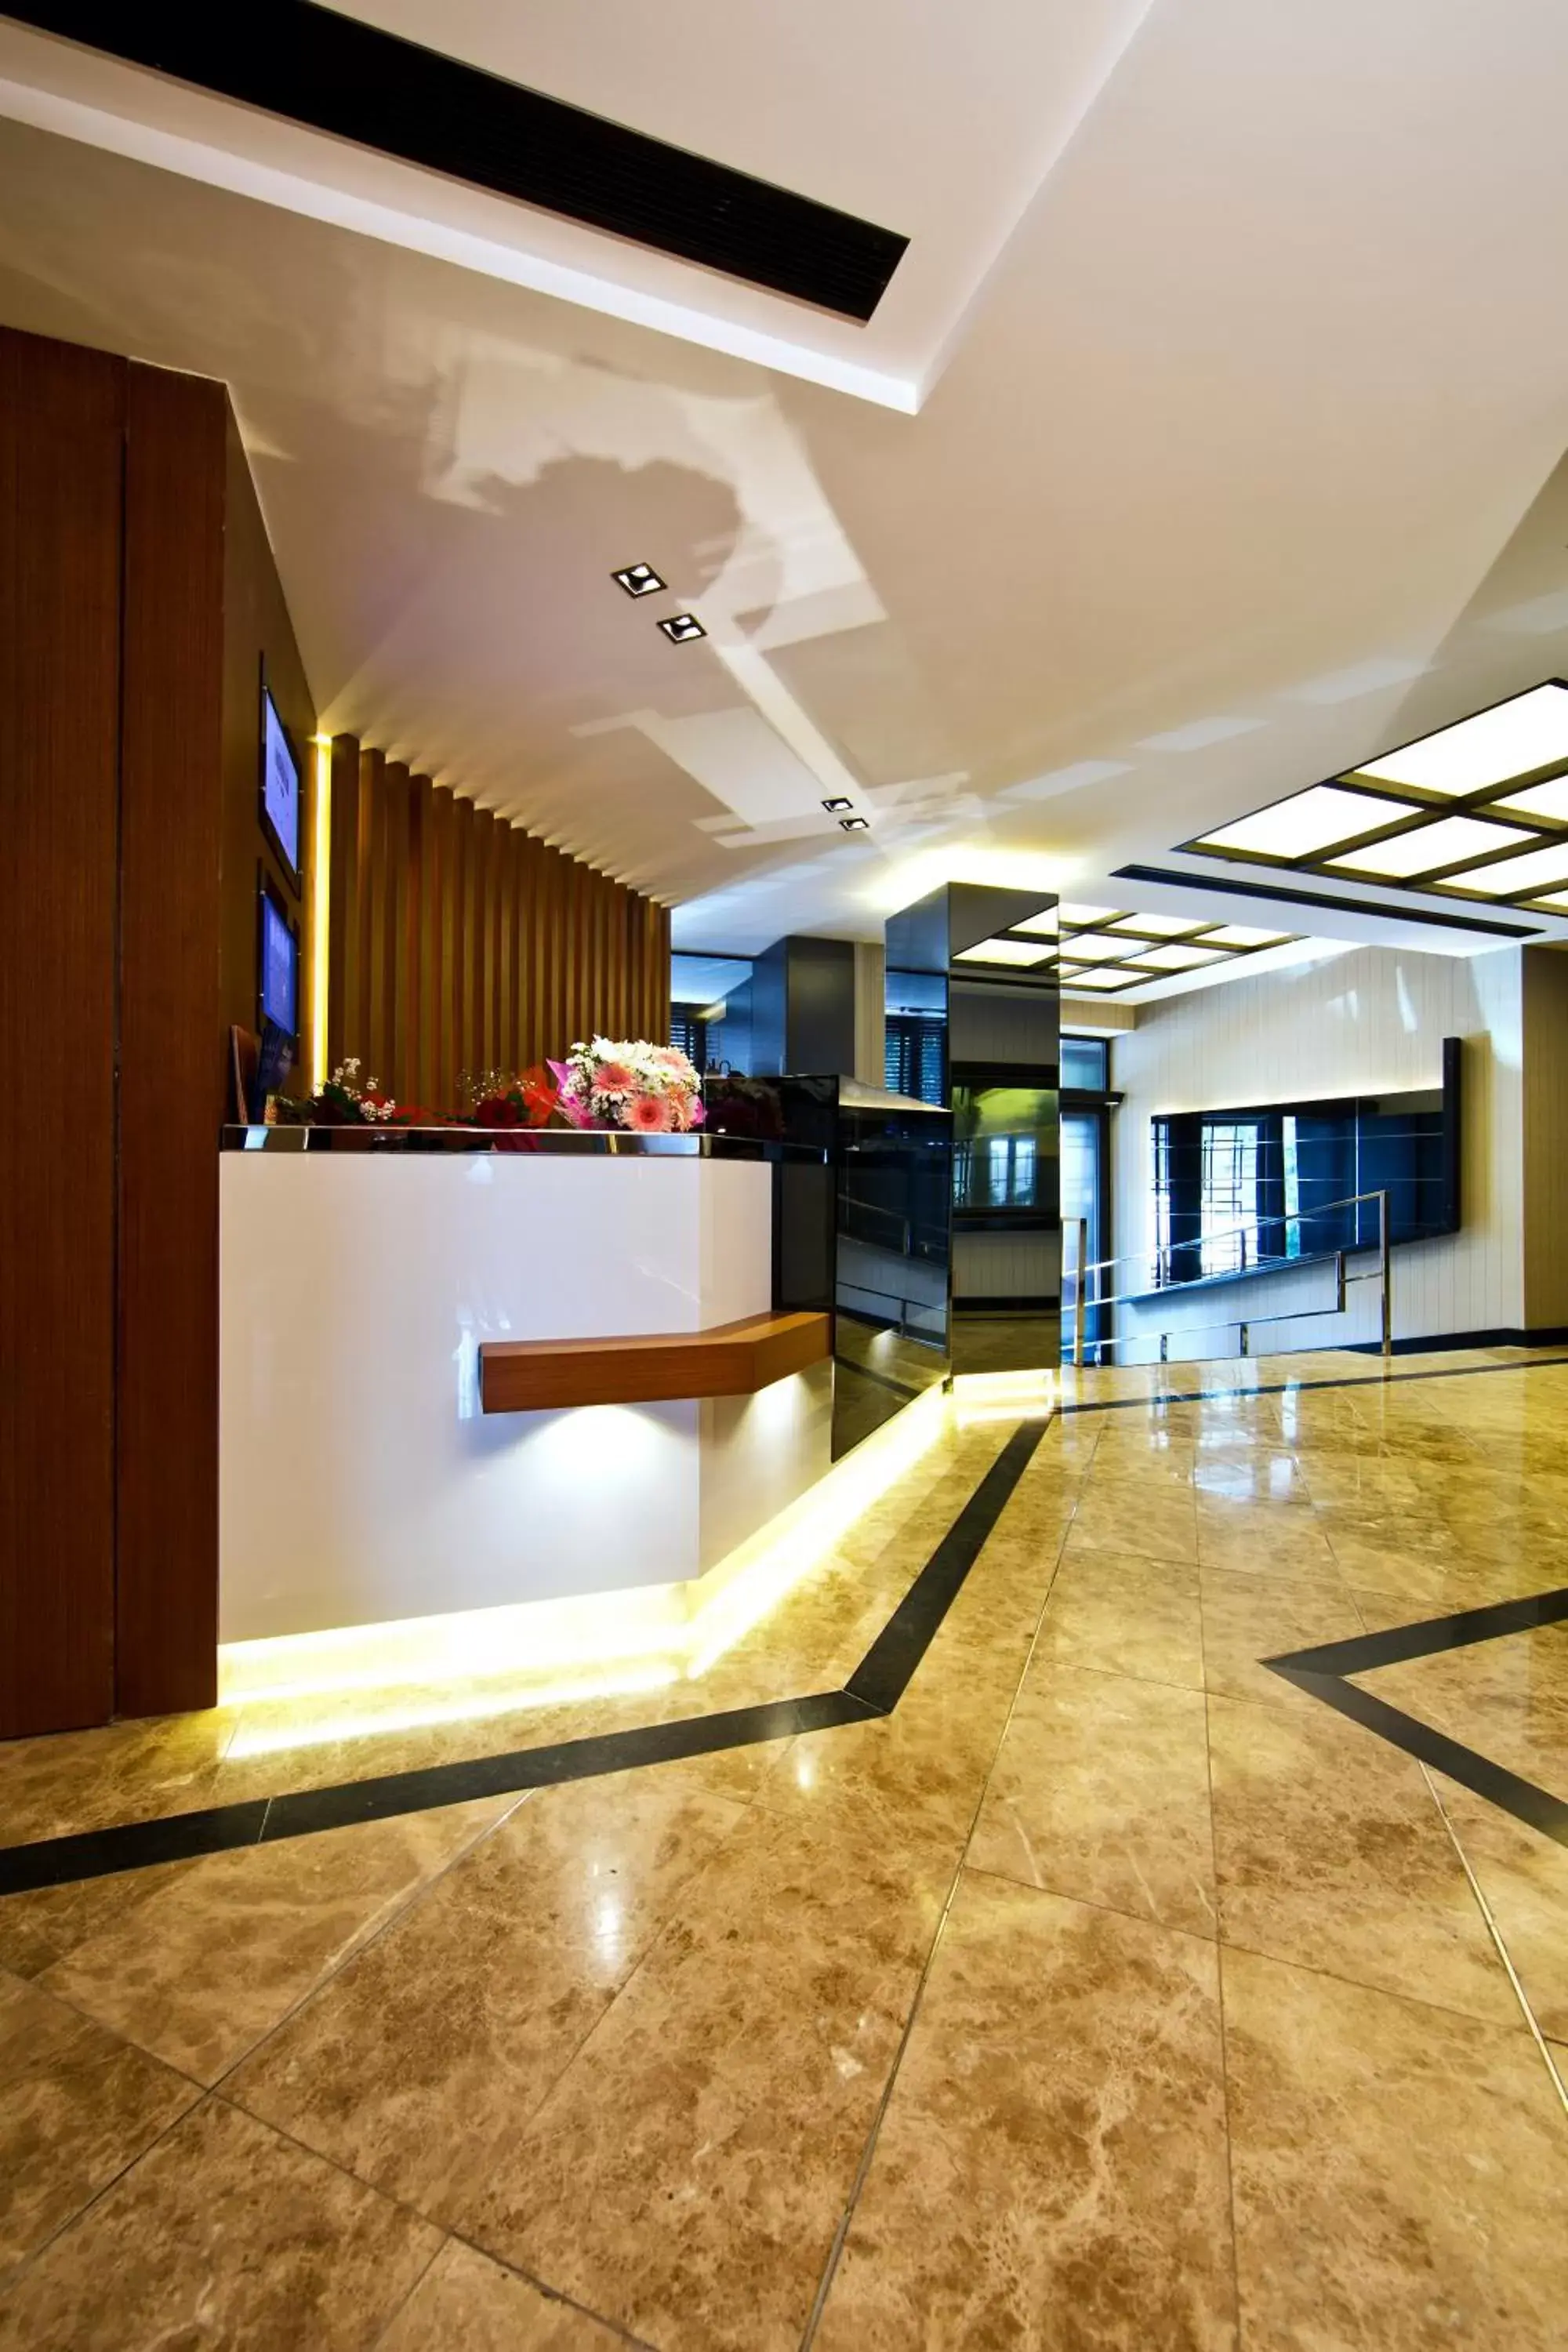 Lobby or reception, Lobby/Reception in Cihangir Hotel